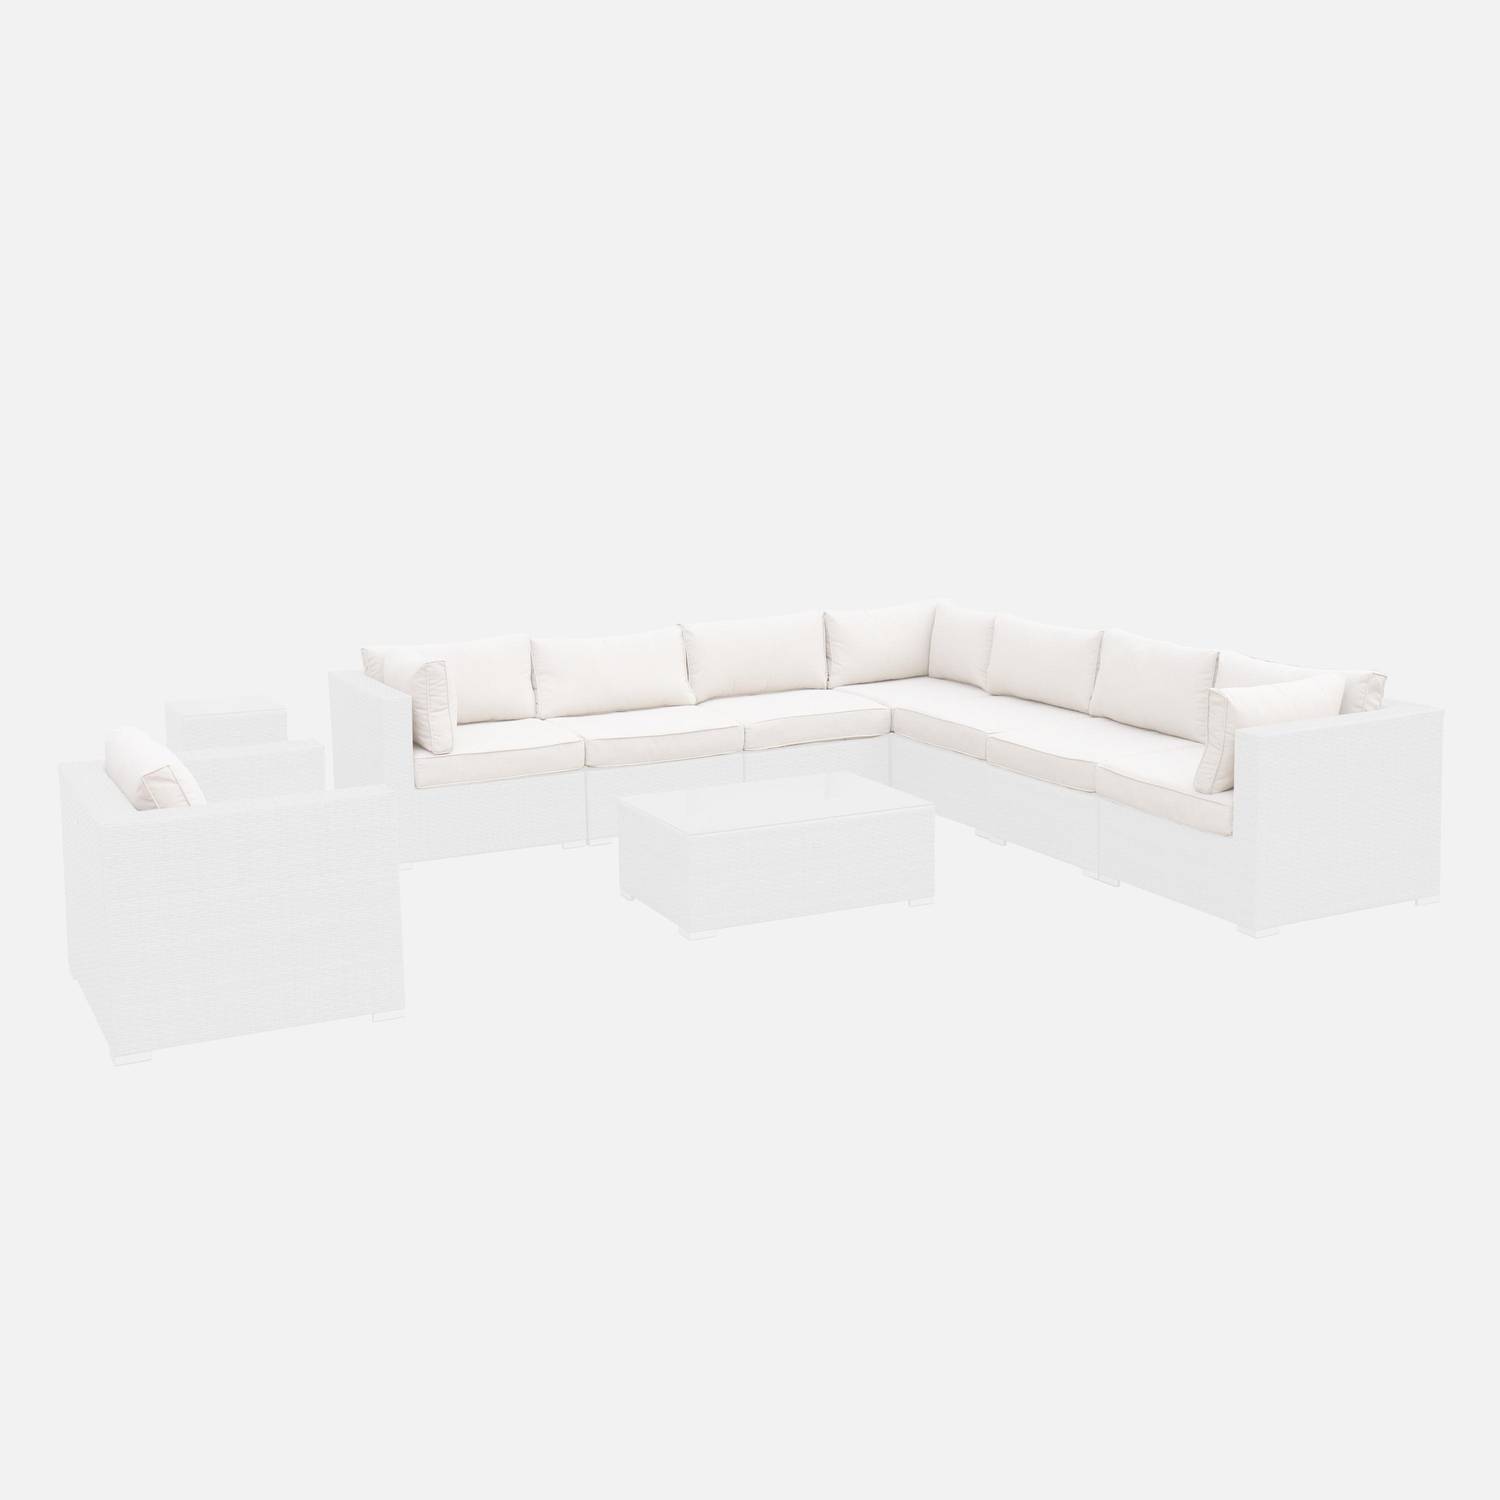 Set di fodere per cuscini, colore: Ecru, per salotto da giardino, modello: Venezia - set completo Photo1